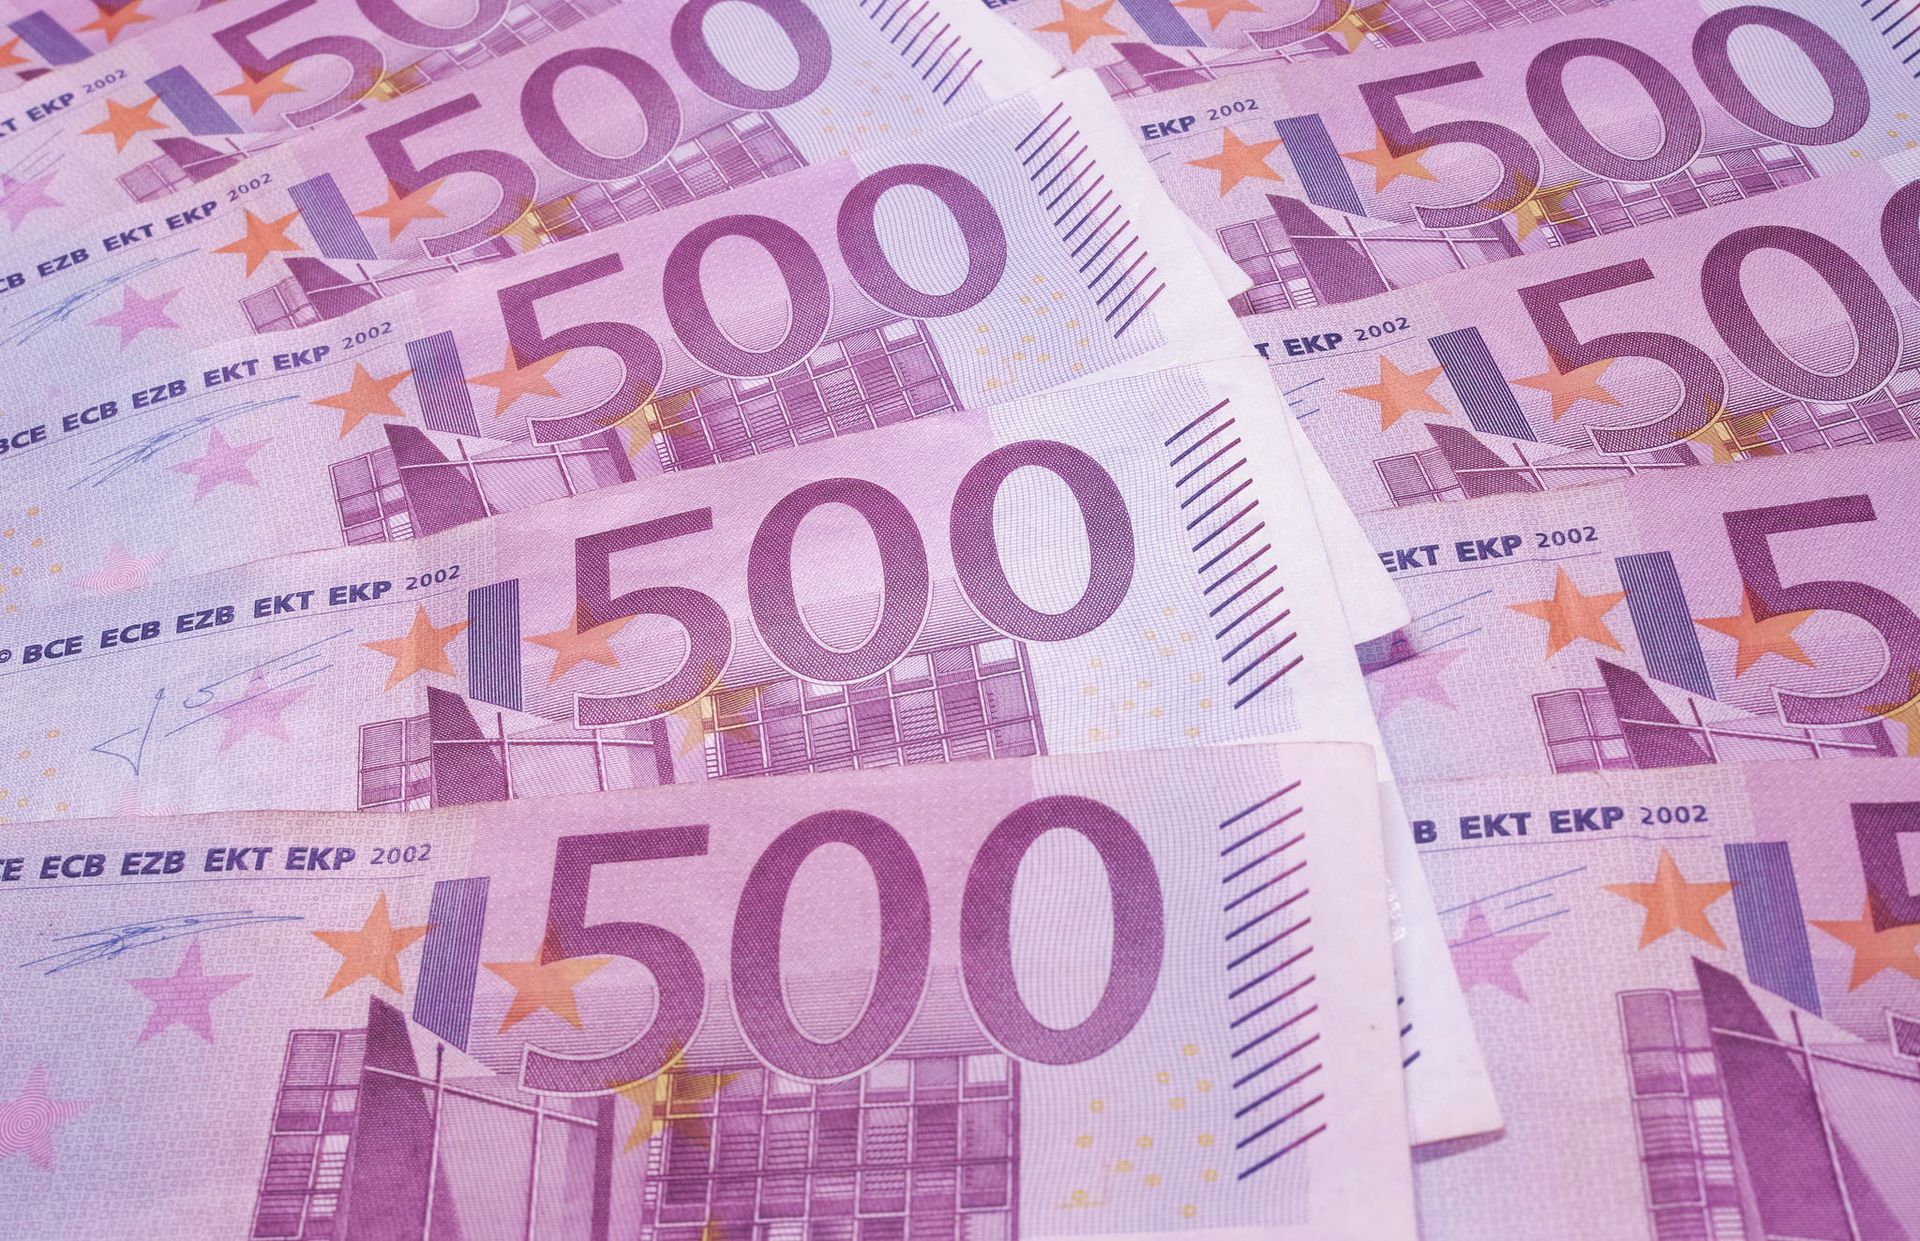 broeden Detective plek ECB stopt uitgifte 500 euro biljetten, Duitsers kritisch op verlies  vrijheid - Joop - BNNVARA